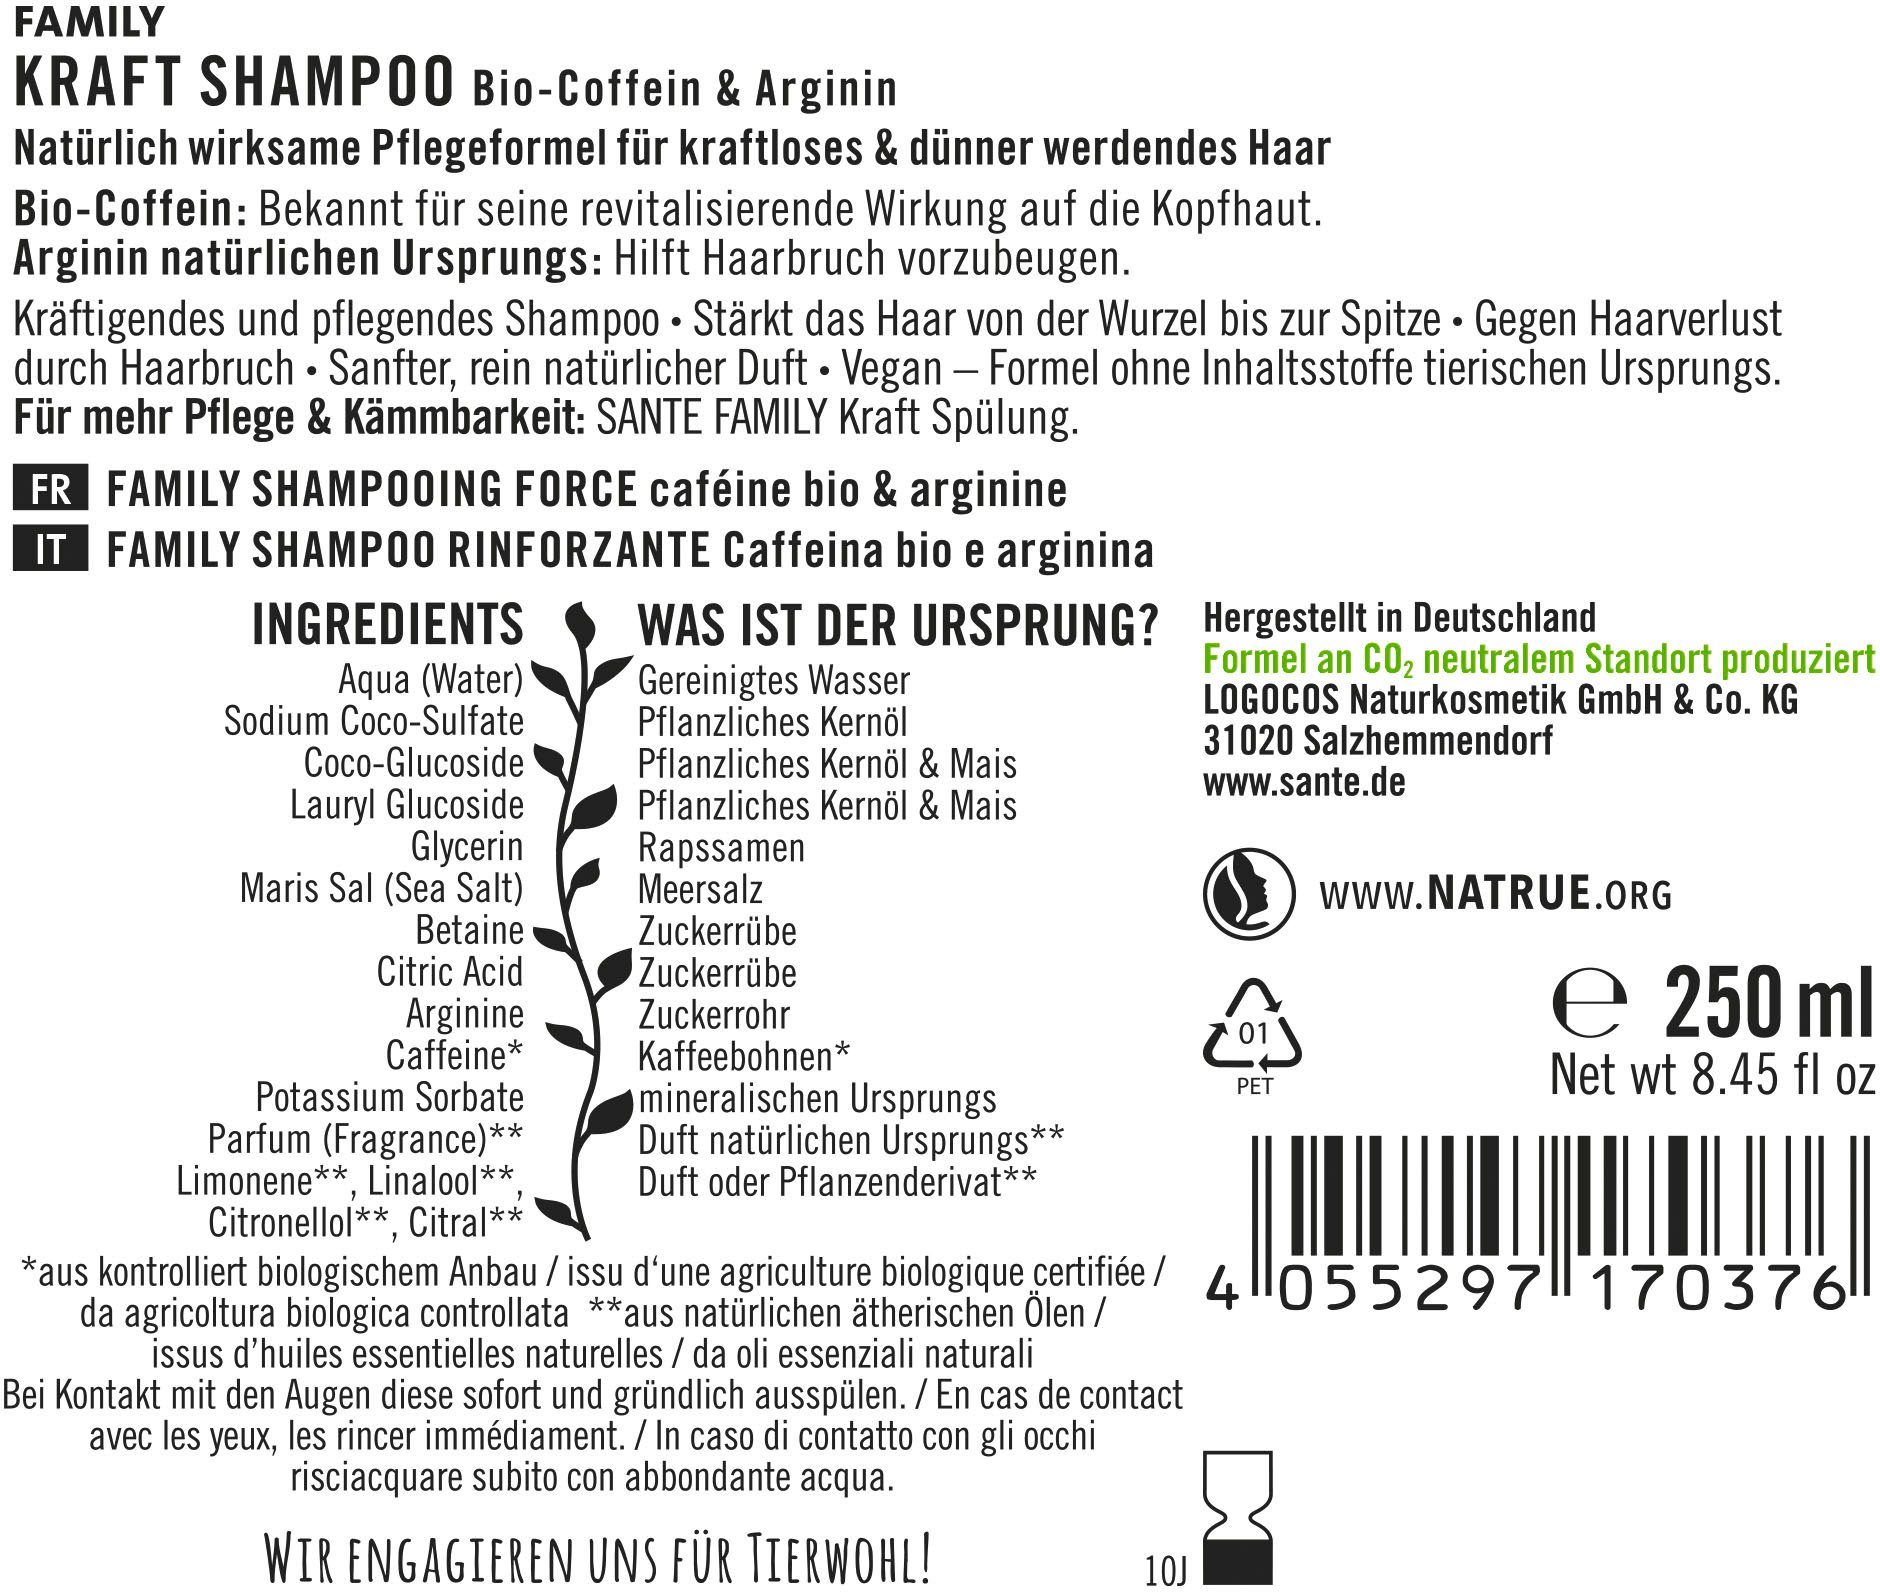 SANTE Shampoo Haarshampoo Kraft